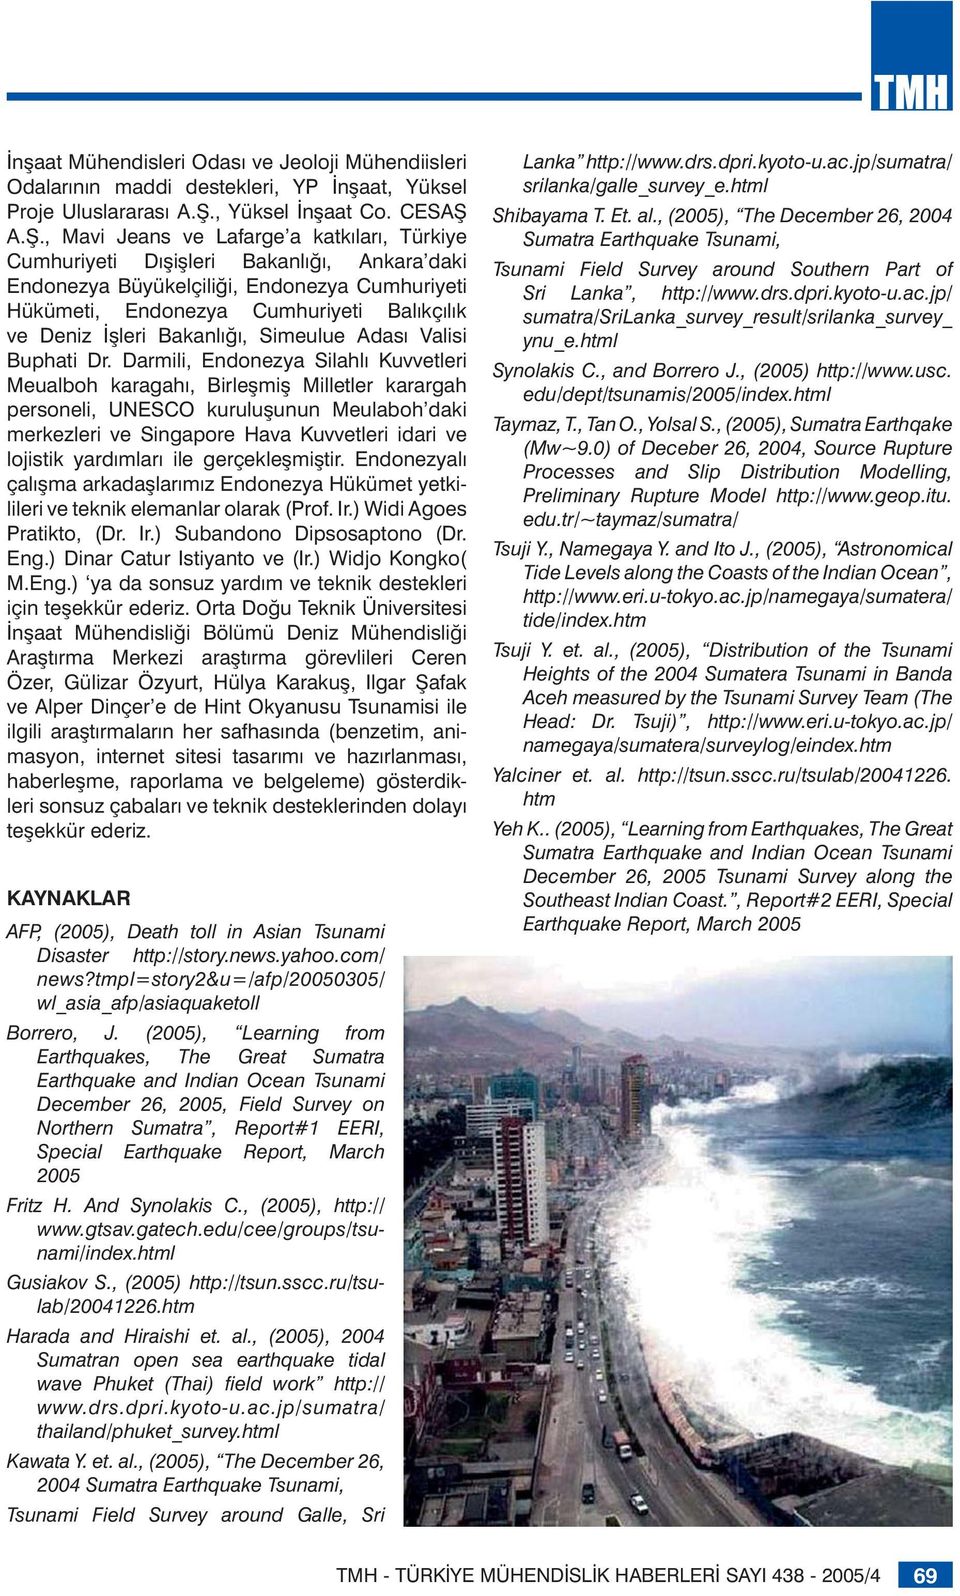 A.Ş., Mavi Jeans ve Lafarge a katkıları, Türkiye Cumhuriyeti Dışişleri Bakanlığı, Ankara daki Endonezya Büyükelçiliği, Endonezya Cumhuriyeti Hükümeti, Endonezya Cumhuriyeti Balıkçılık ve Deniz İşleri